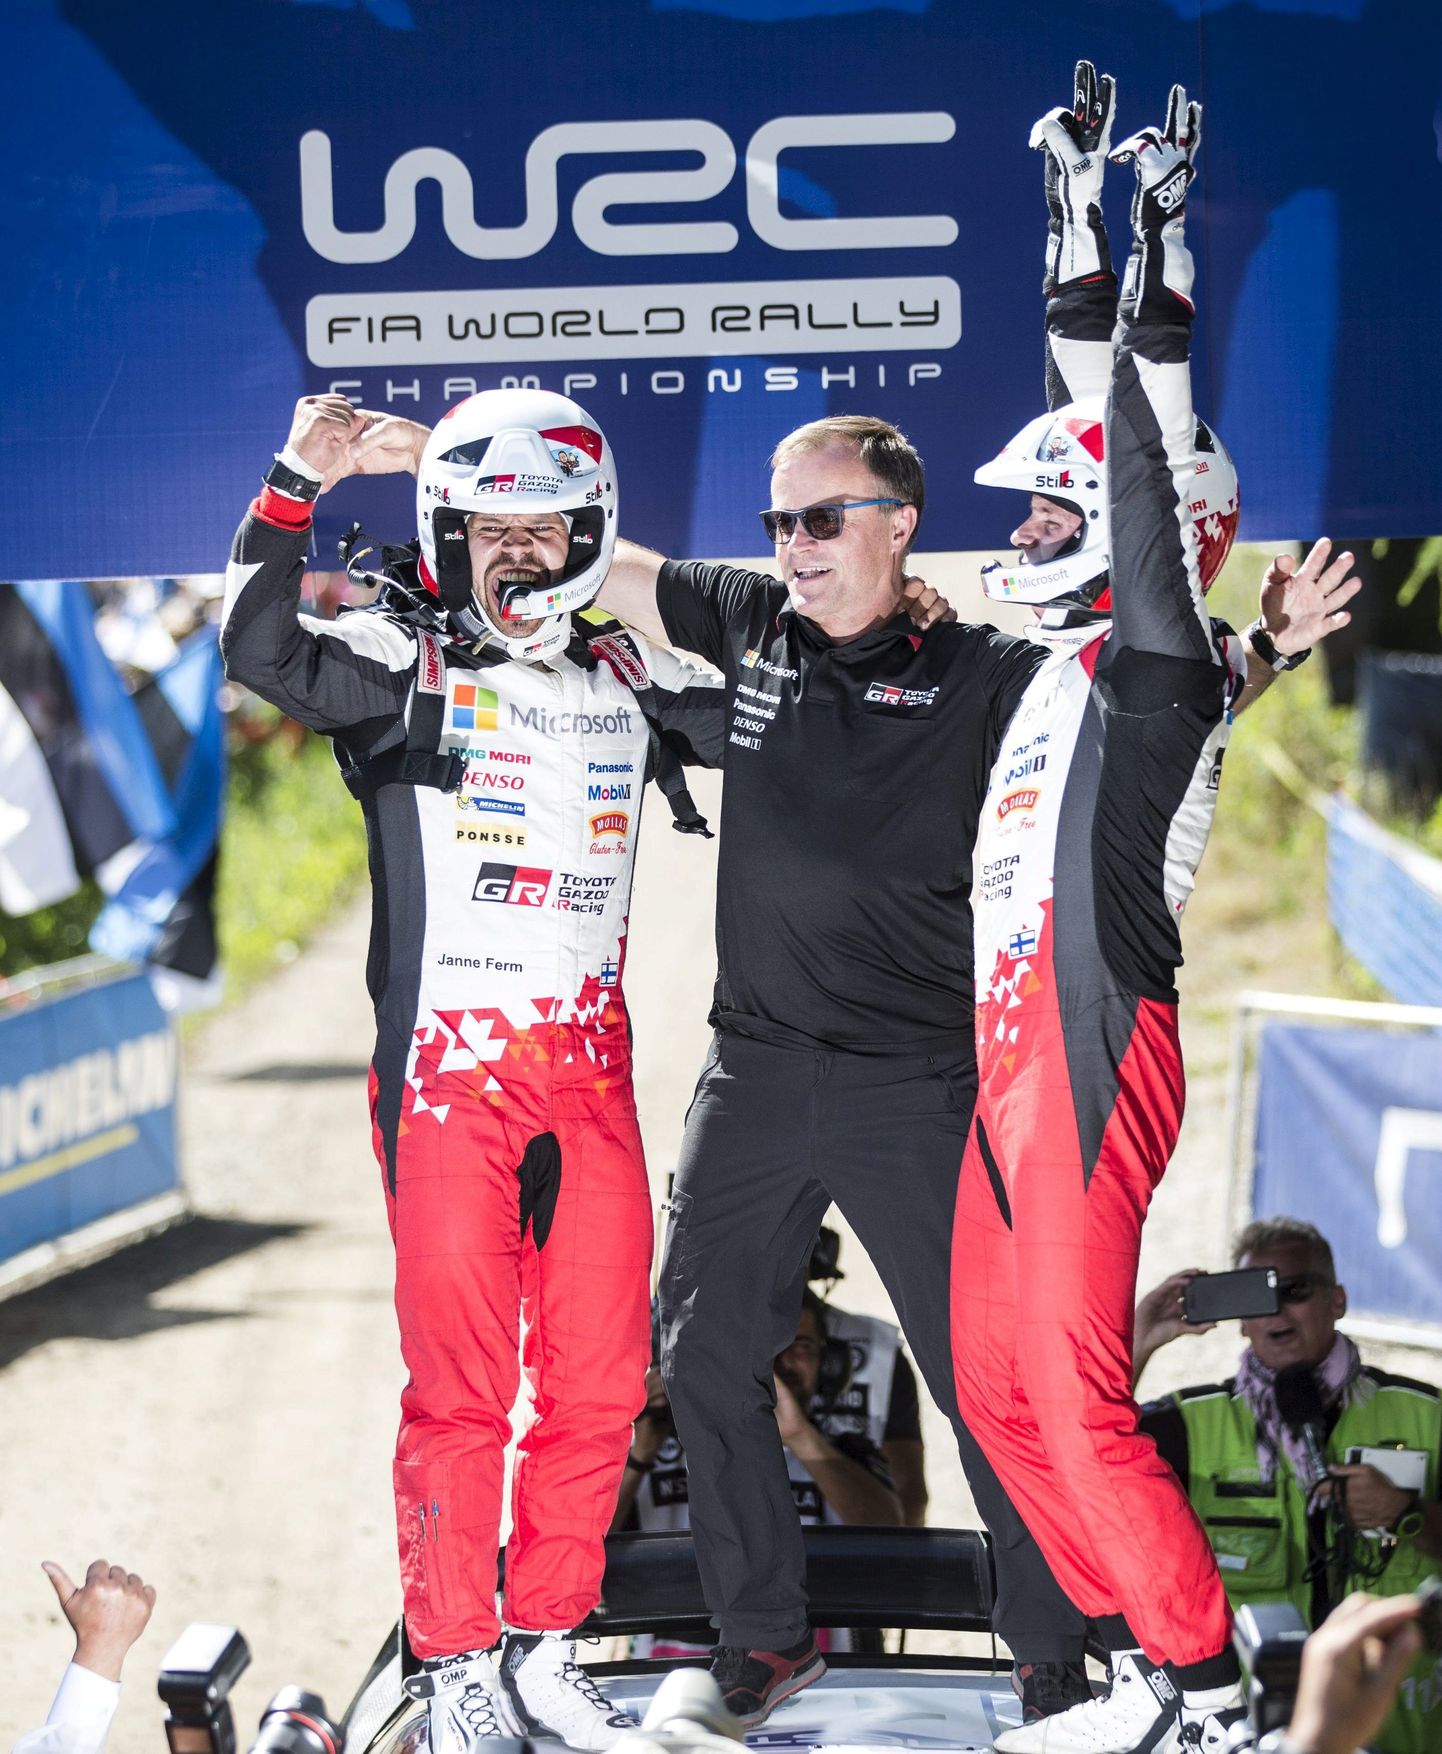 Vasakult: Kaardilugeja Janne Ferm ja Toyota tiimipealik Tommi Mäkinen koos Esapekka Lappiga Soome ralli võitu tähistamas.